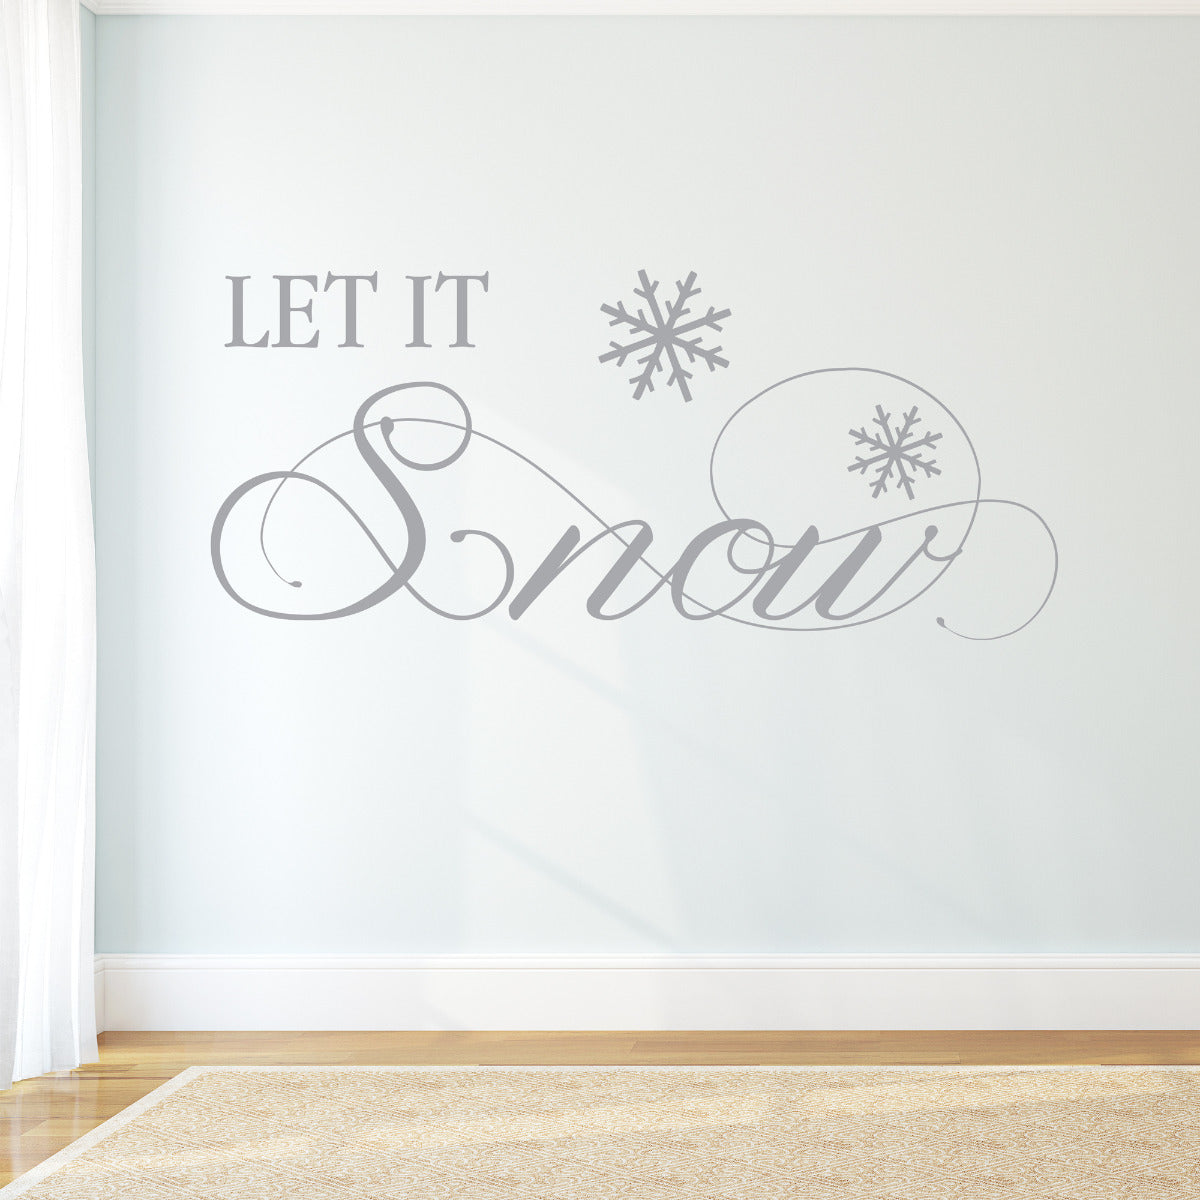 Let It Snow Wall Sticker